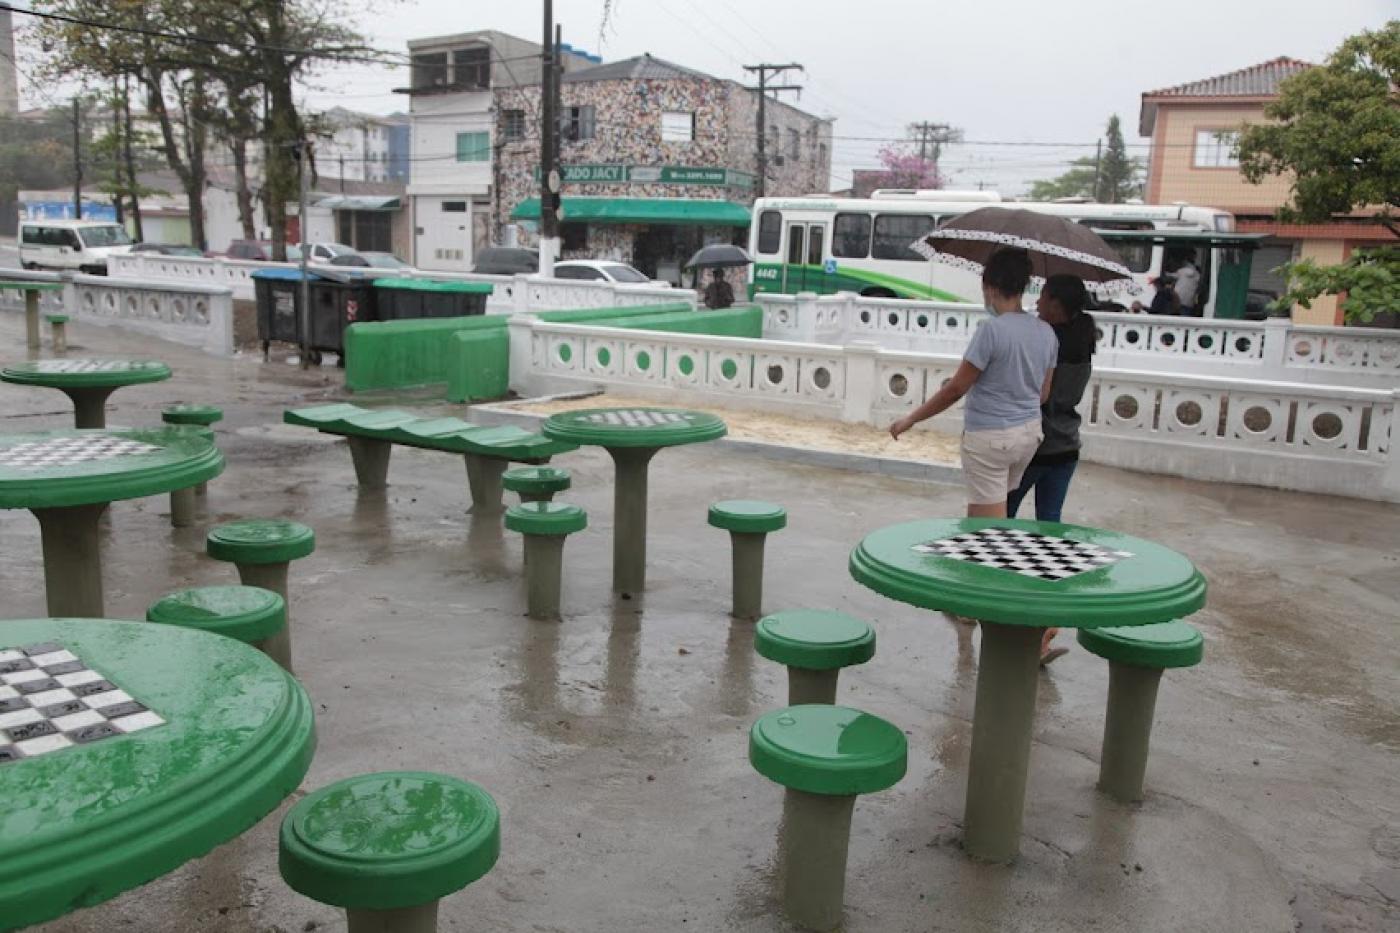 Praça com mesas de dama e canal com muretas. #paratodosverem